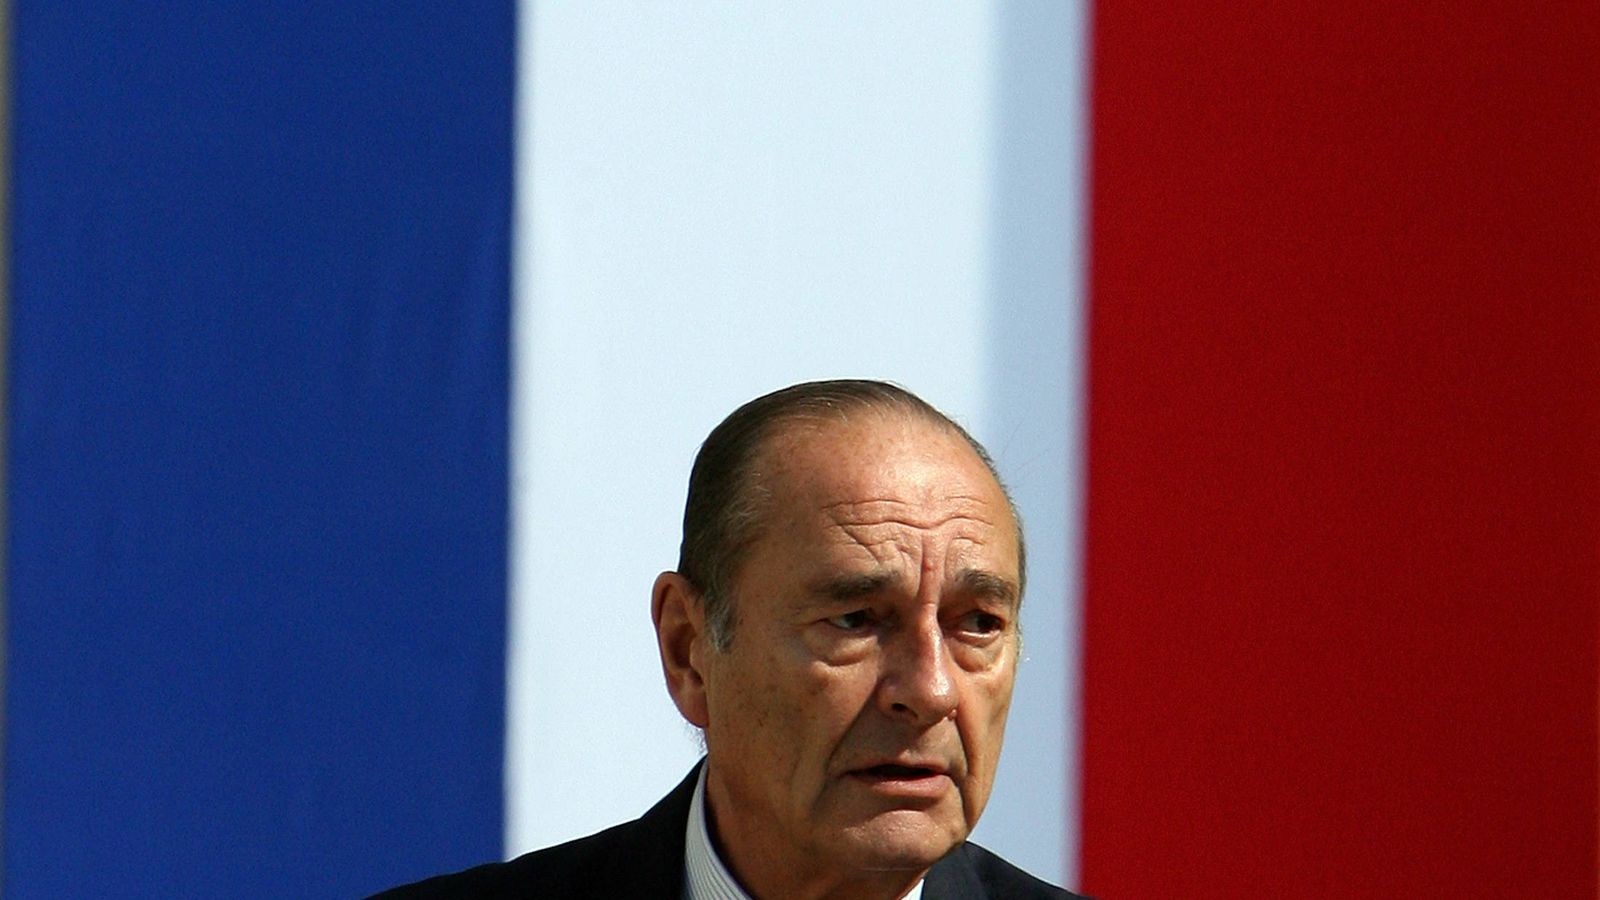 Foto: El expresidente de Francia Jacques Chirac durante un discurso en una ceremonia en Tours, Francia, el 29 de junio de 2006. (Reuters)